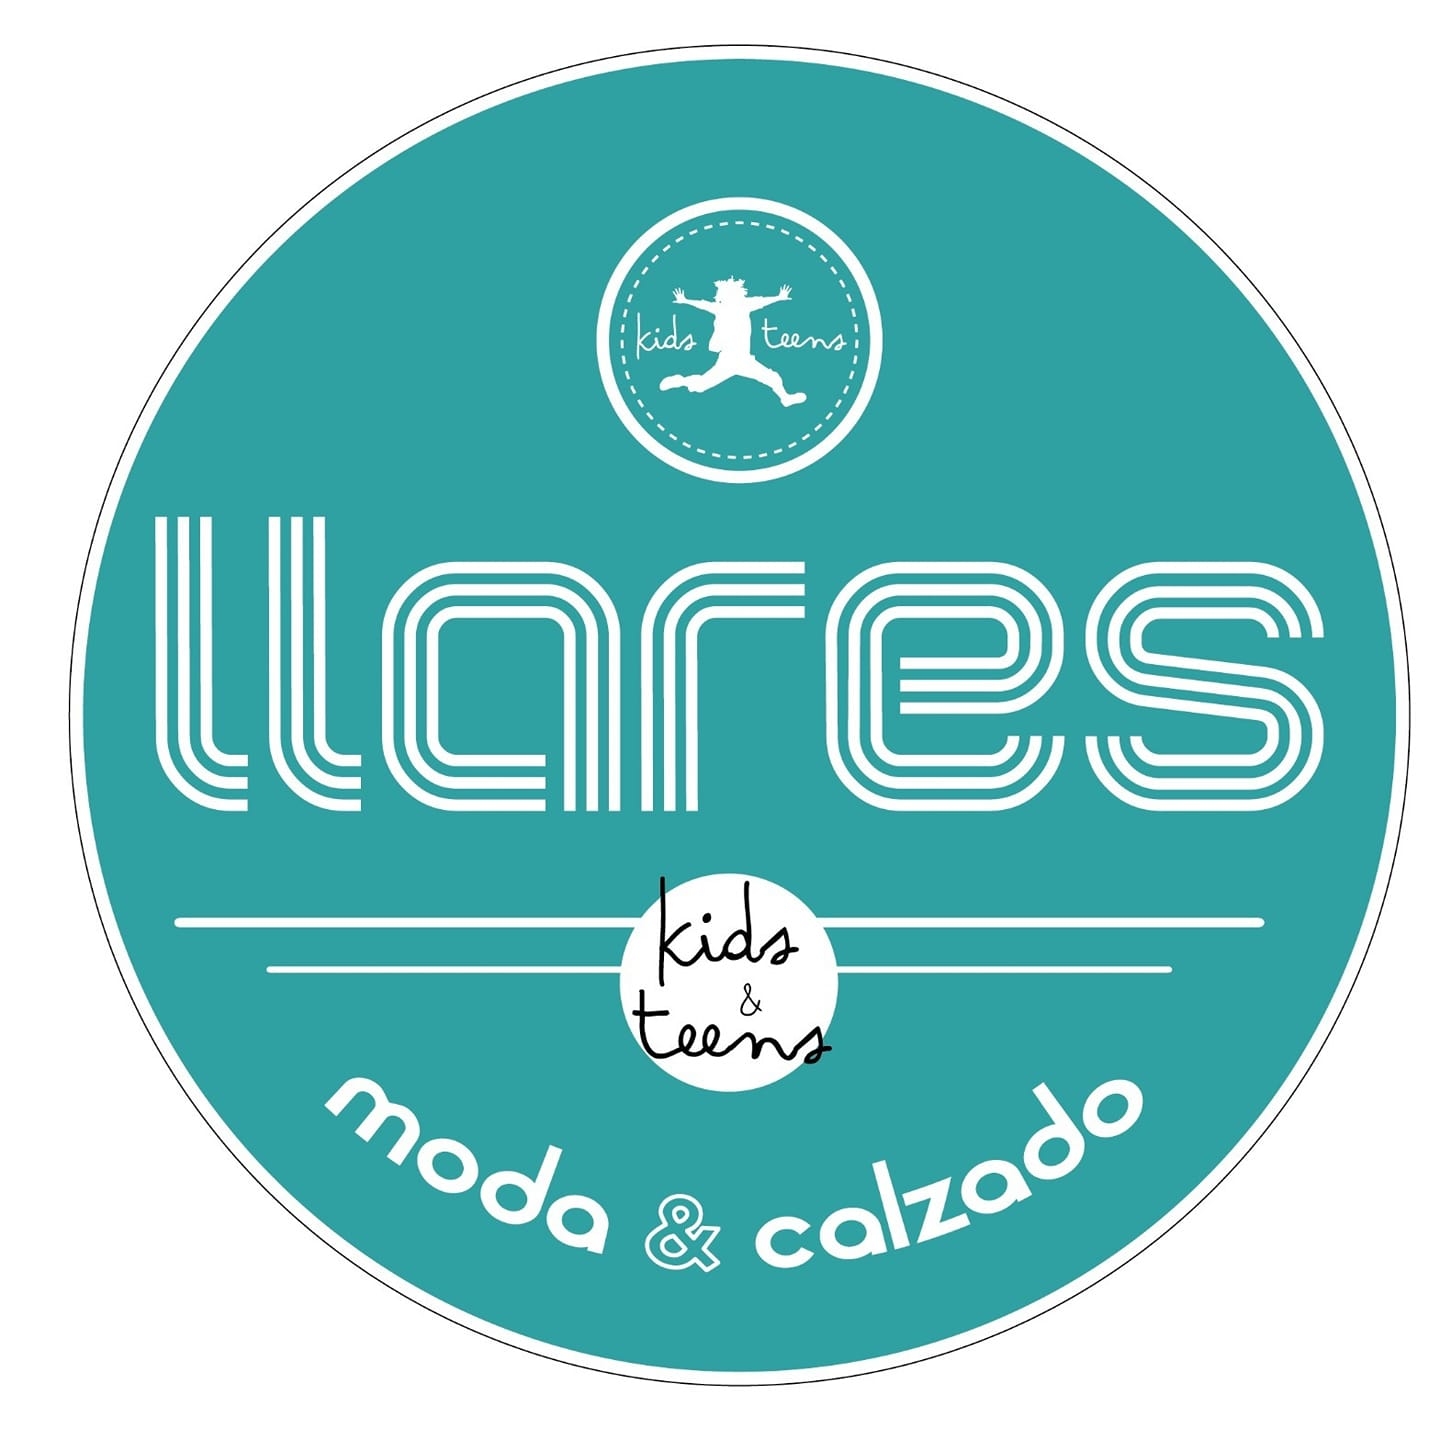 LLARES KIDS MODA Y CALZADO